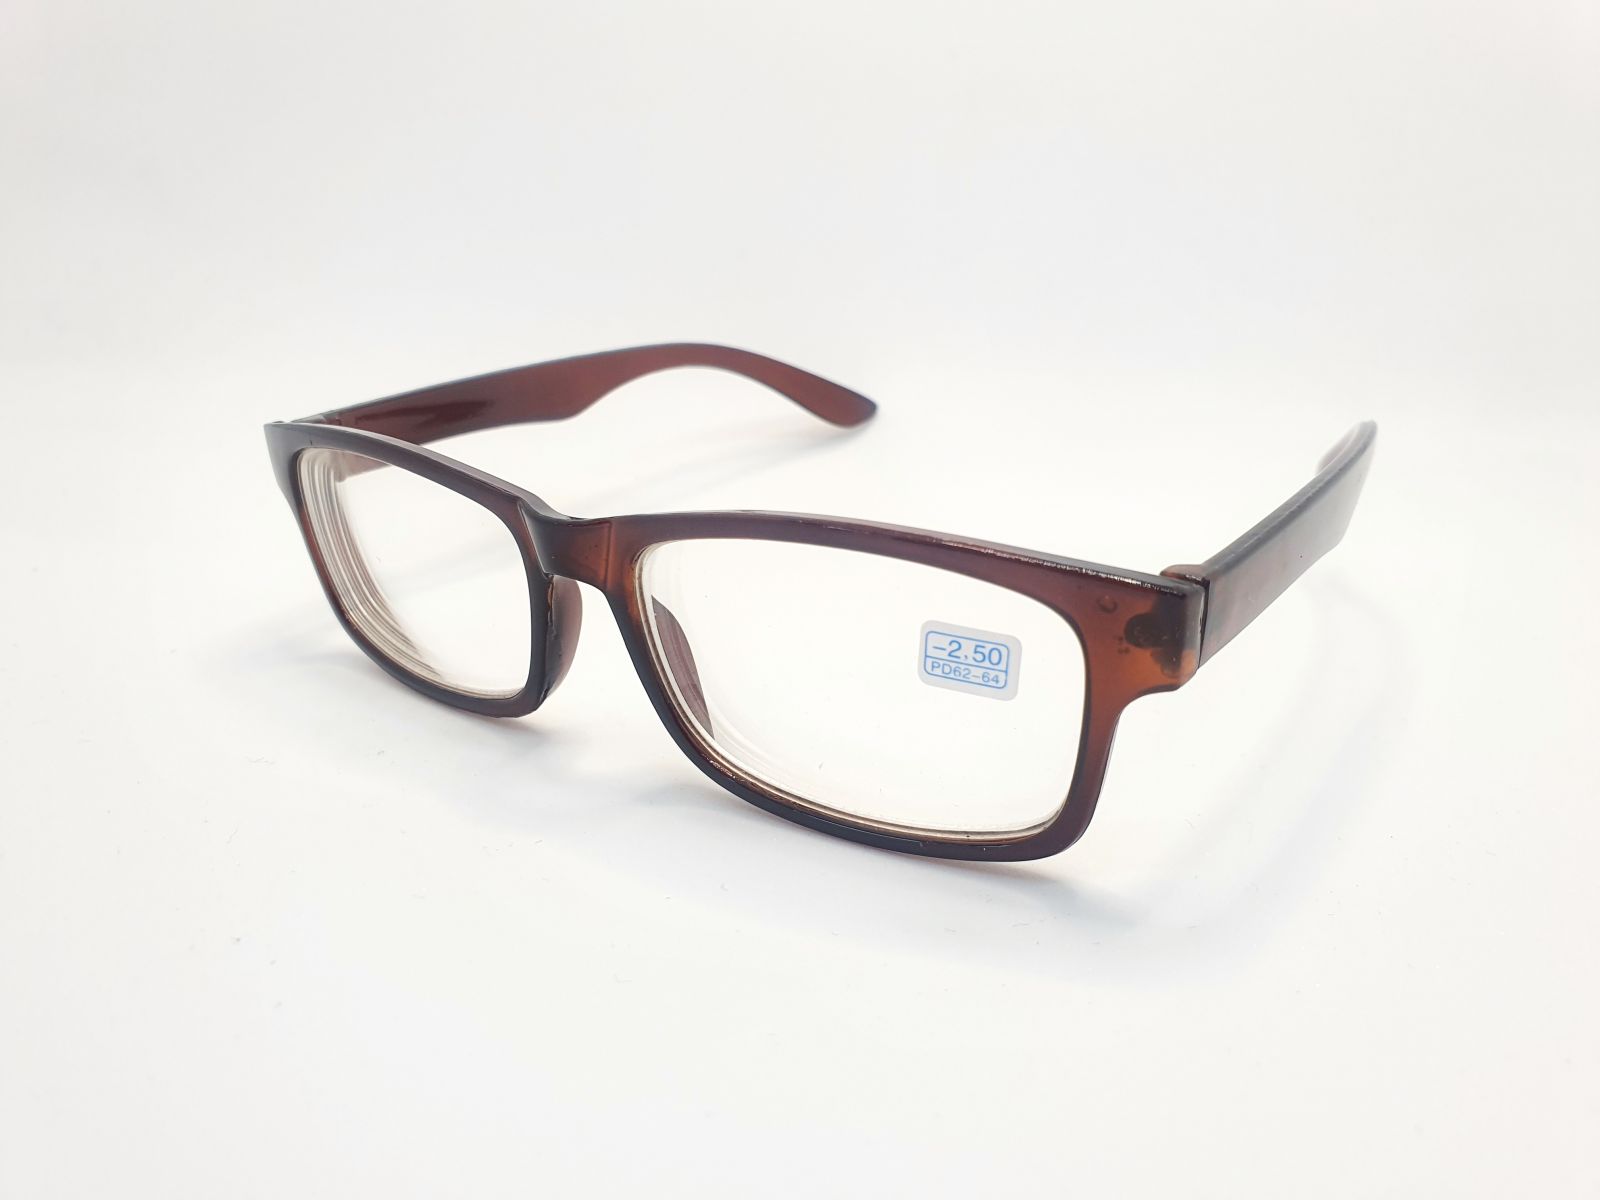 Dioptrické brýle na krátkozrakost 6242 / -3,50 BROWN